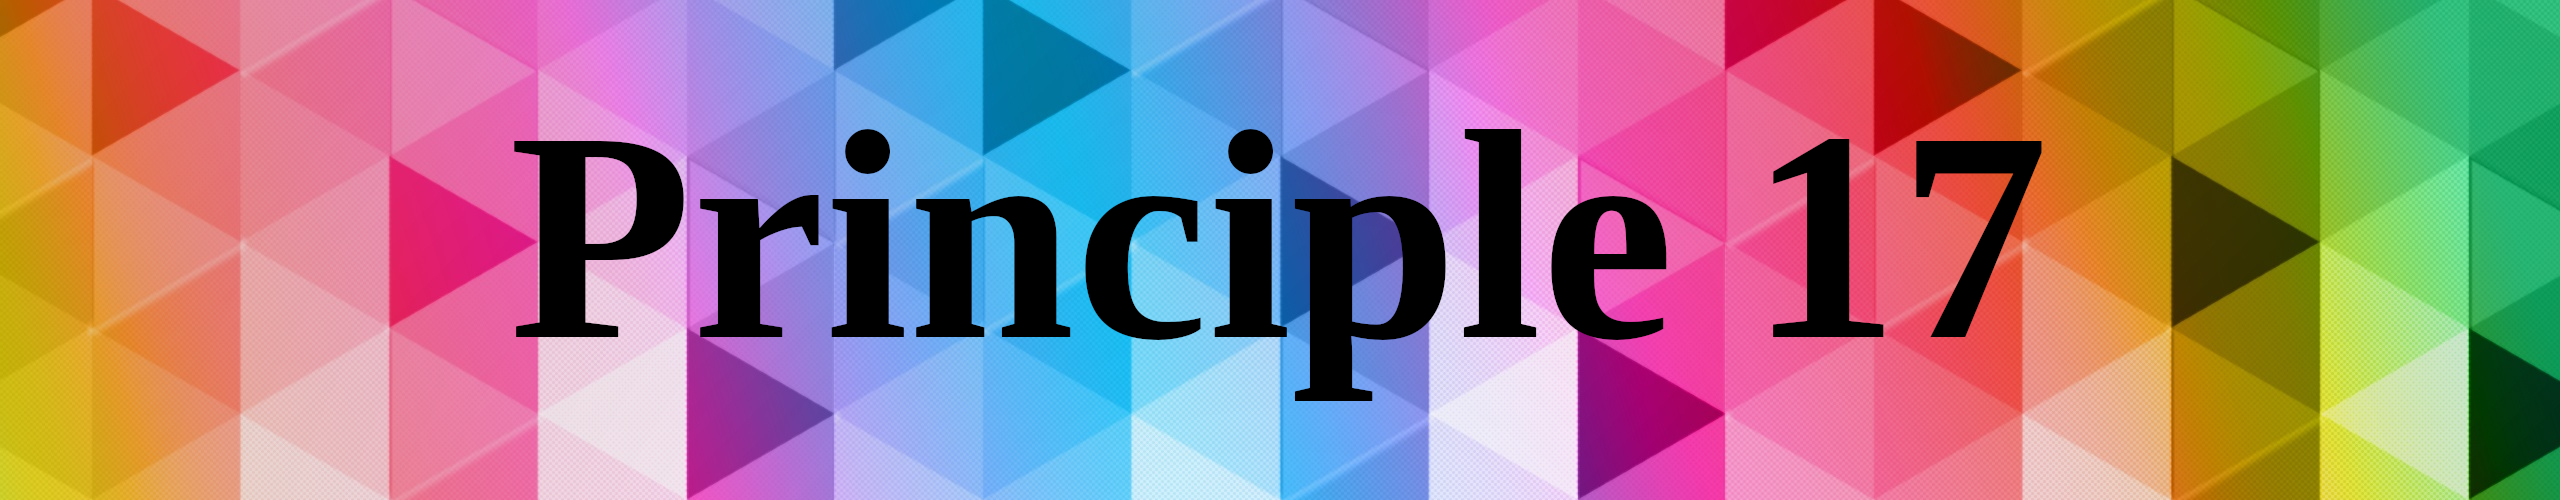 Principle 17 in zwarte letters, op een achtergrond van gekleurde driehoeken, deels in transgender kleuren (blauw, wit, roze) en deels in regenboogkleuren.